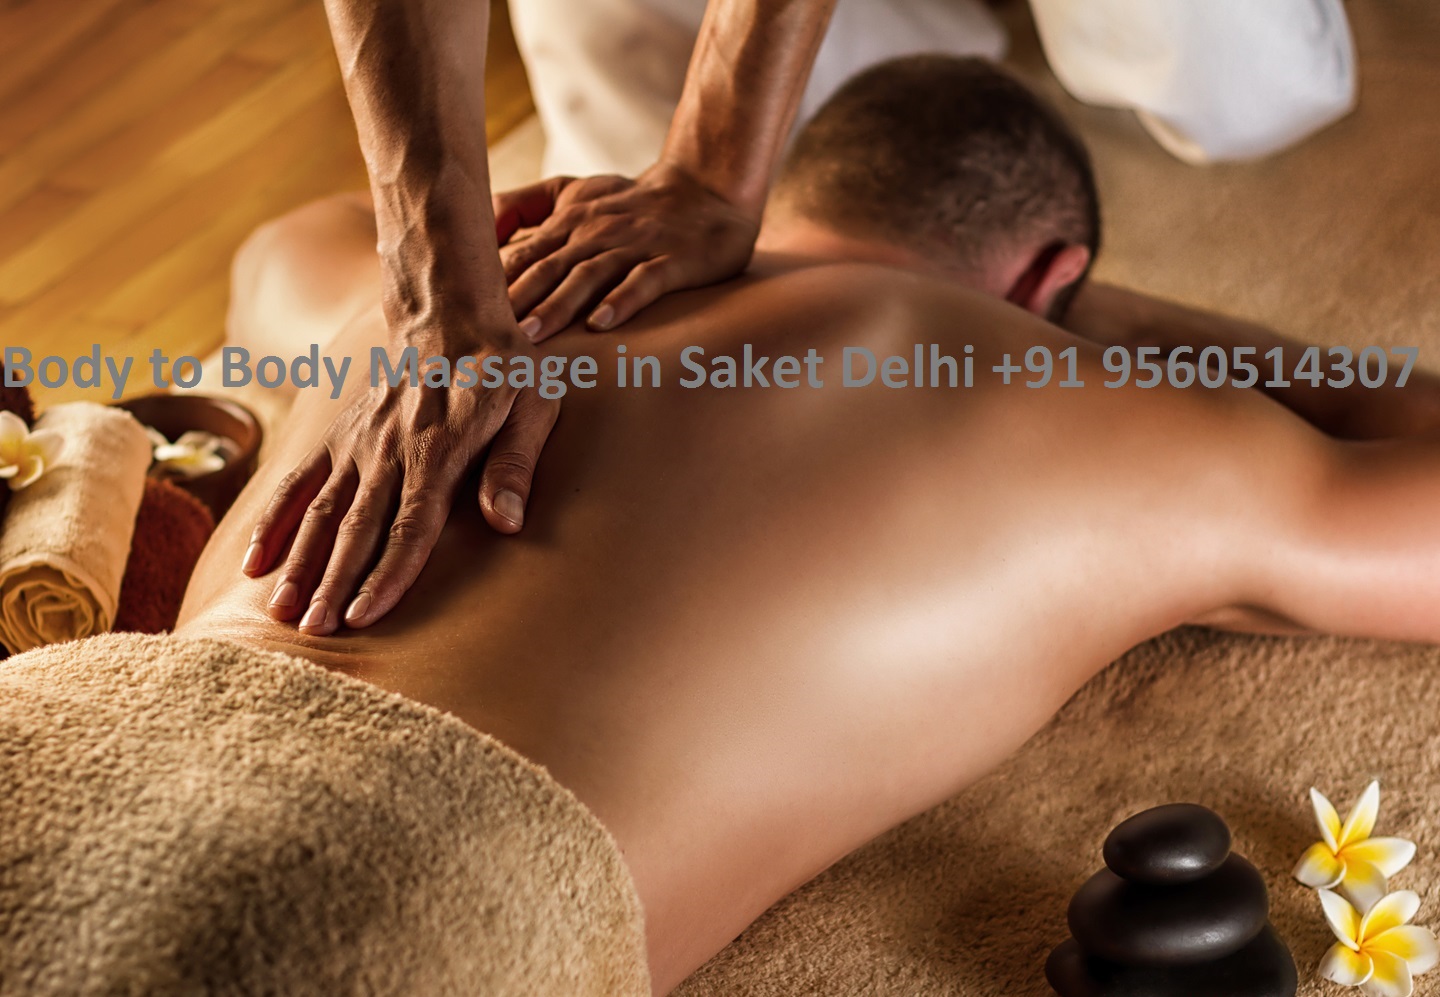 Body to Body Massage in Saket Delhi